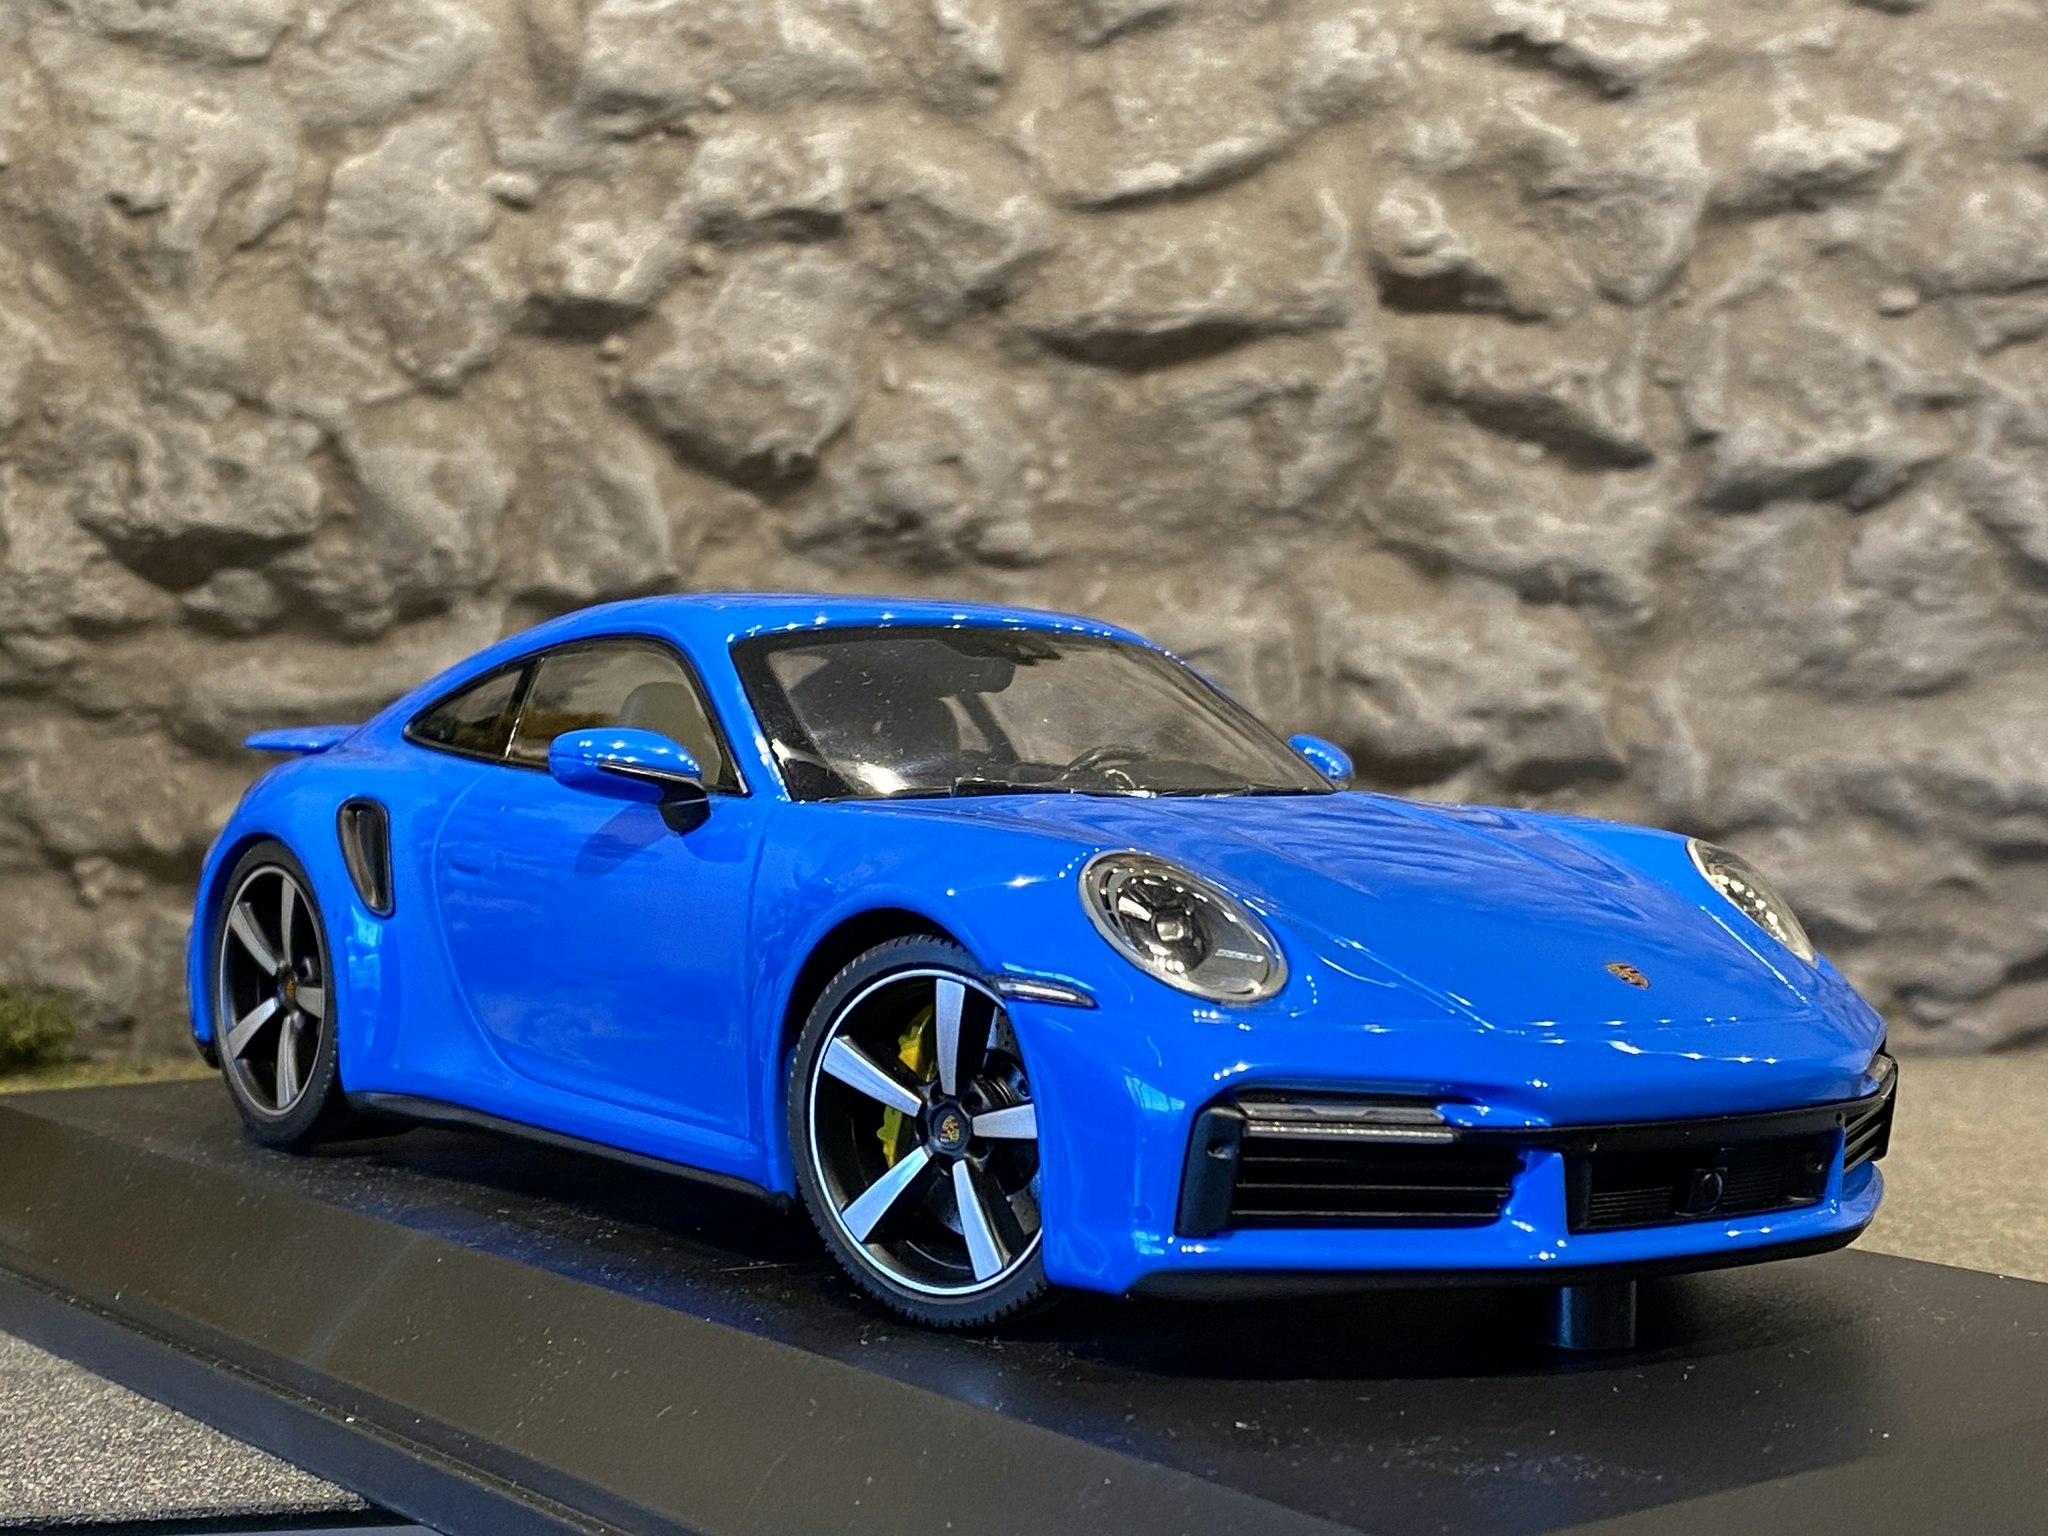 Skala 1/18 Porsche 911 Turbo S 2020, Blå fr Minichamps